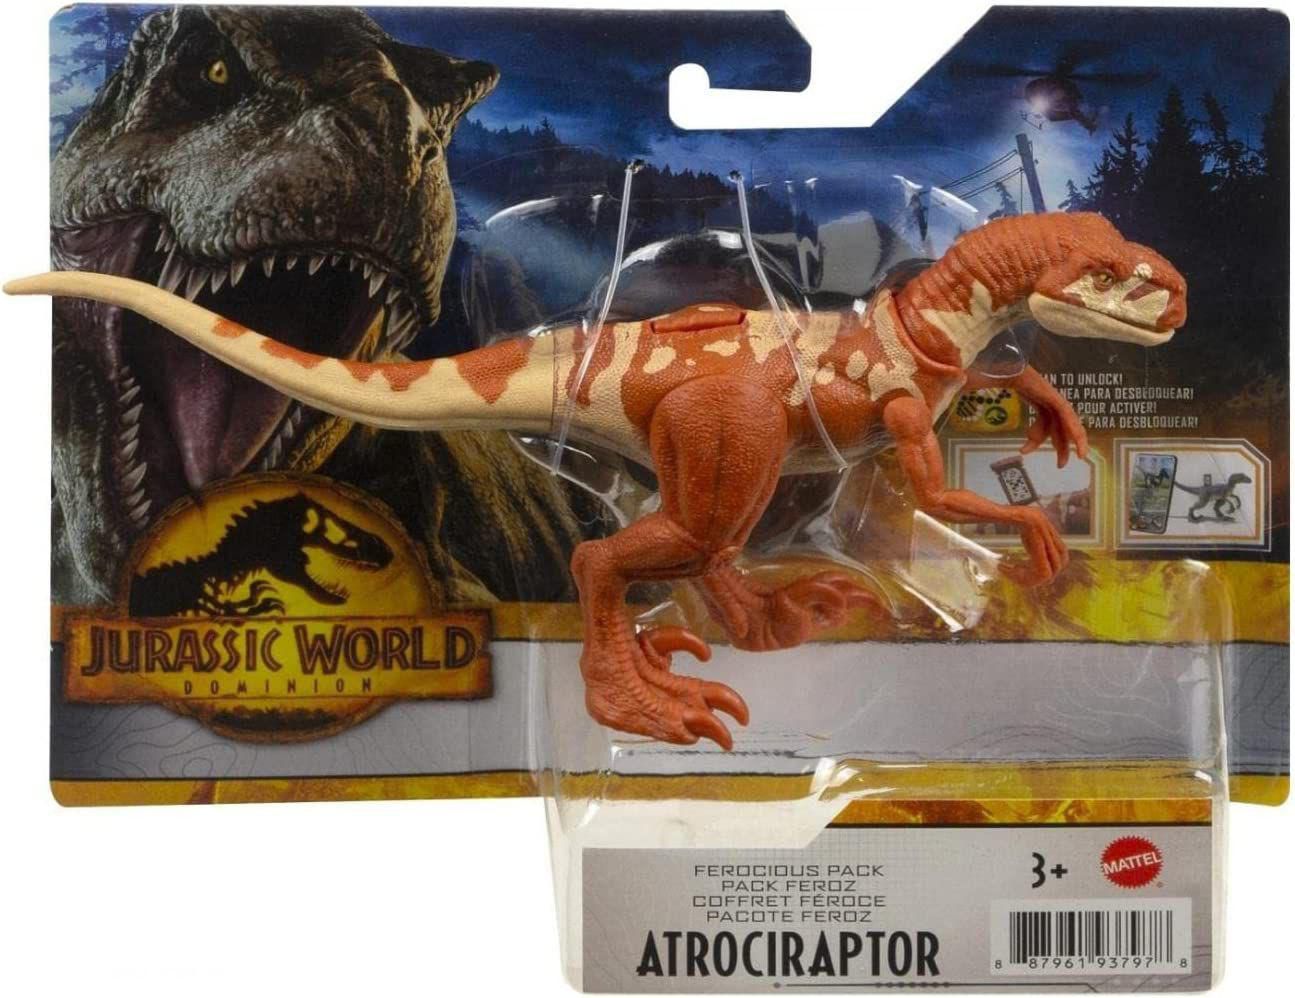 Jurassic World 3: Nova foto mostra dinossauro com visual mais realista